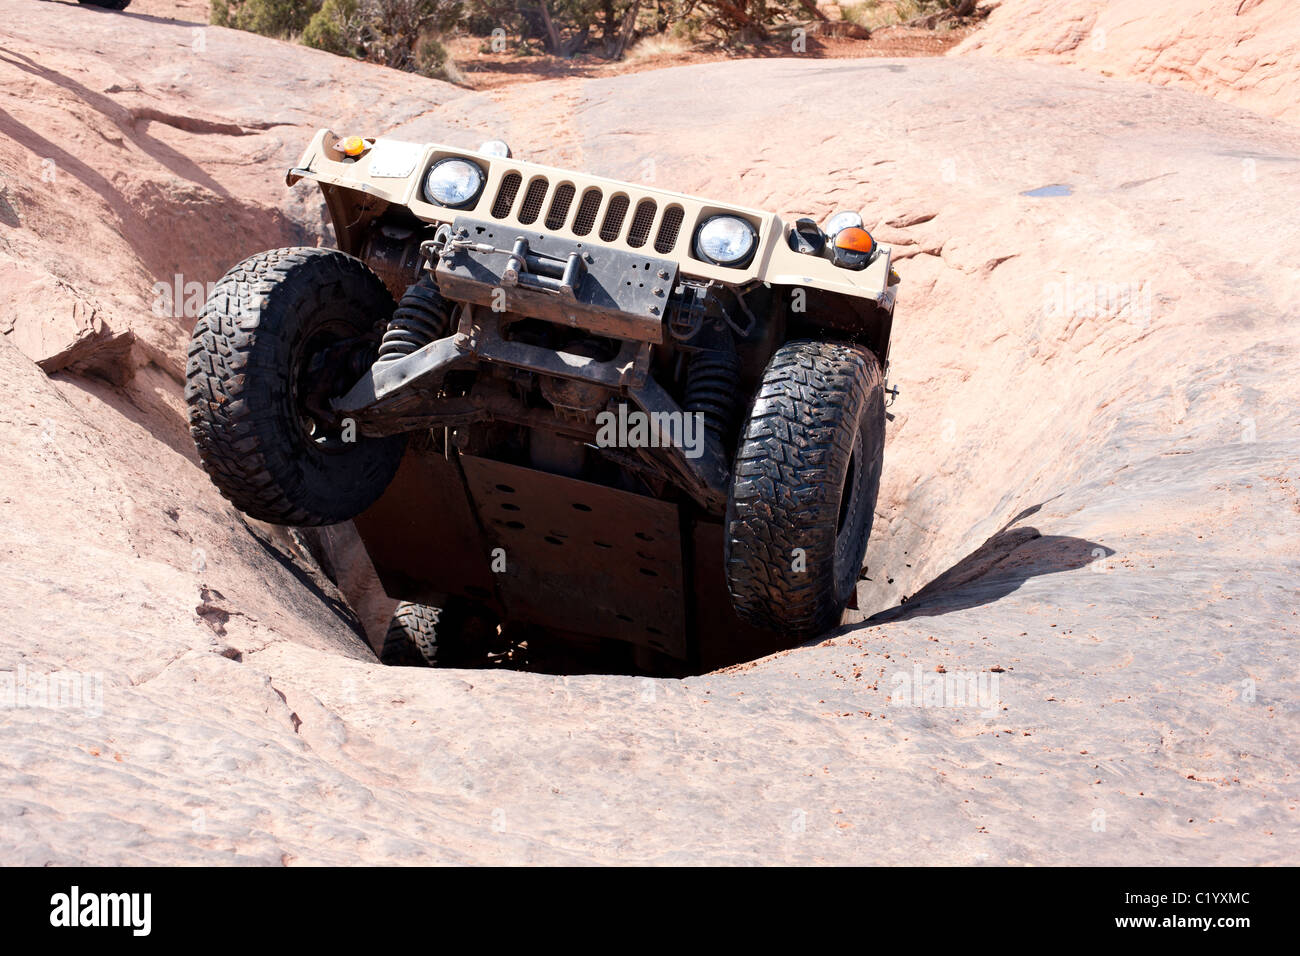 Hummer utilise son plein potentiel sur le célèbre rocher de sable de Moab, Grand County, Utah, États-Unis. Banque D'Images